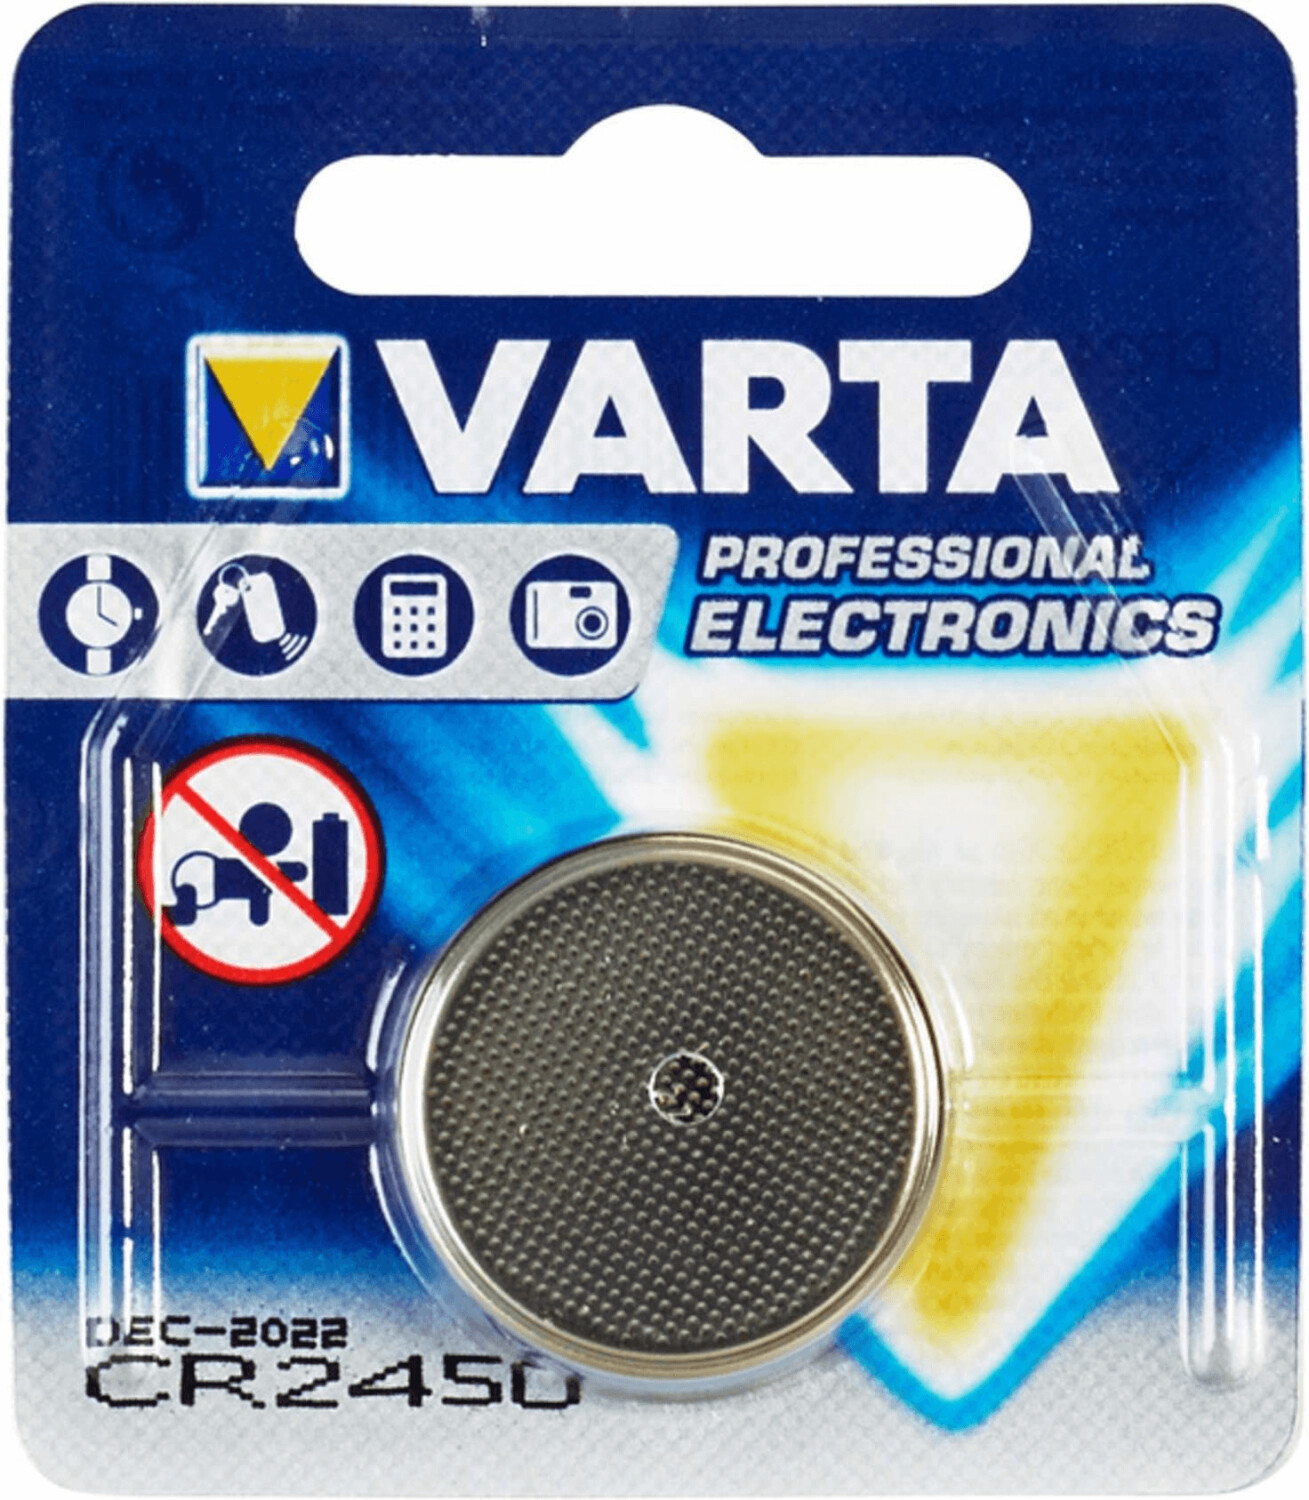 VARTA Professional CR2450 au meilleur prix sur